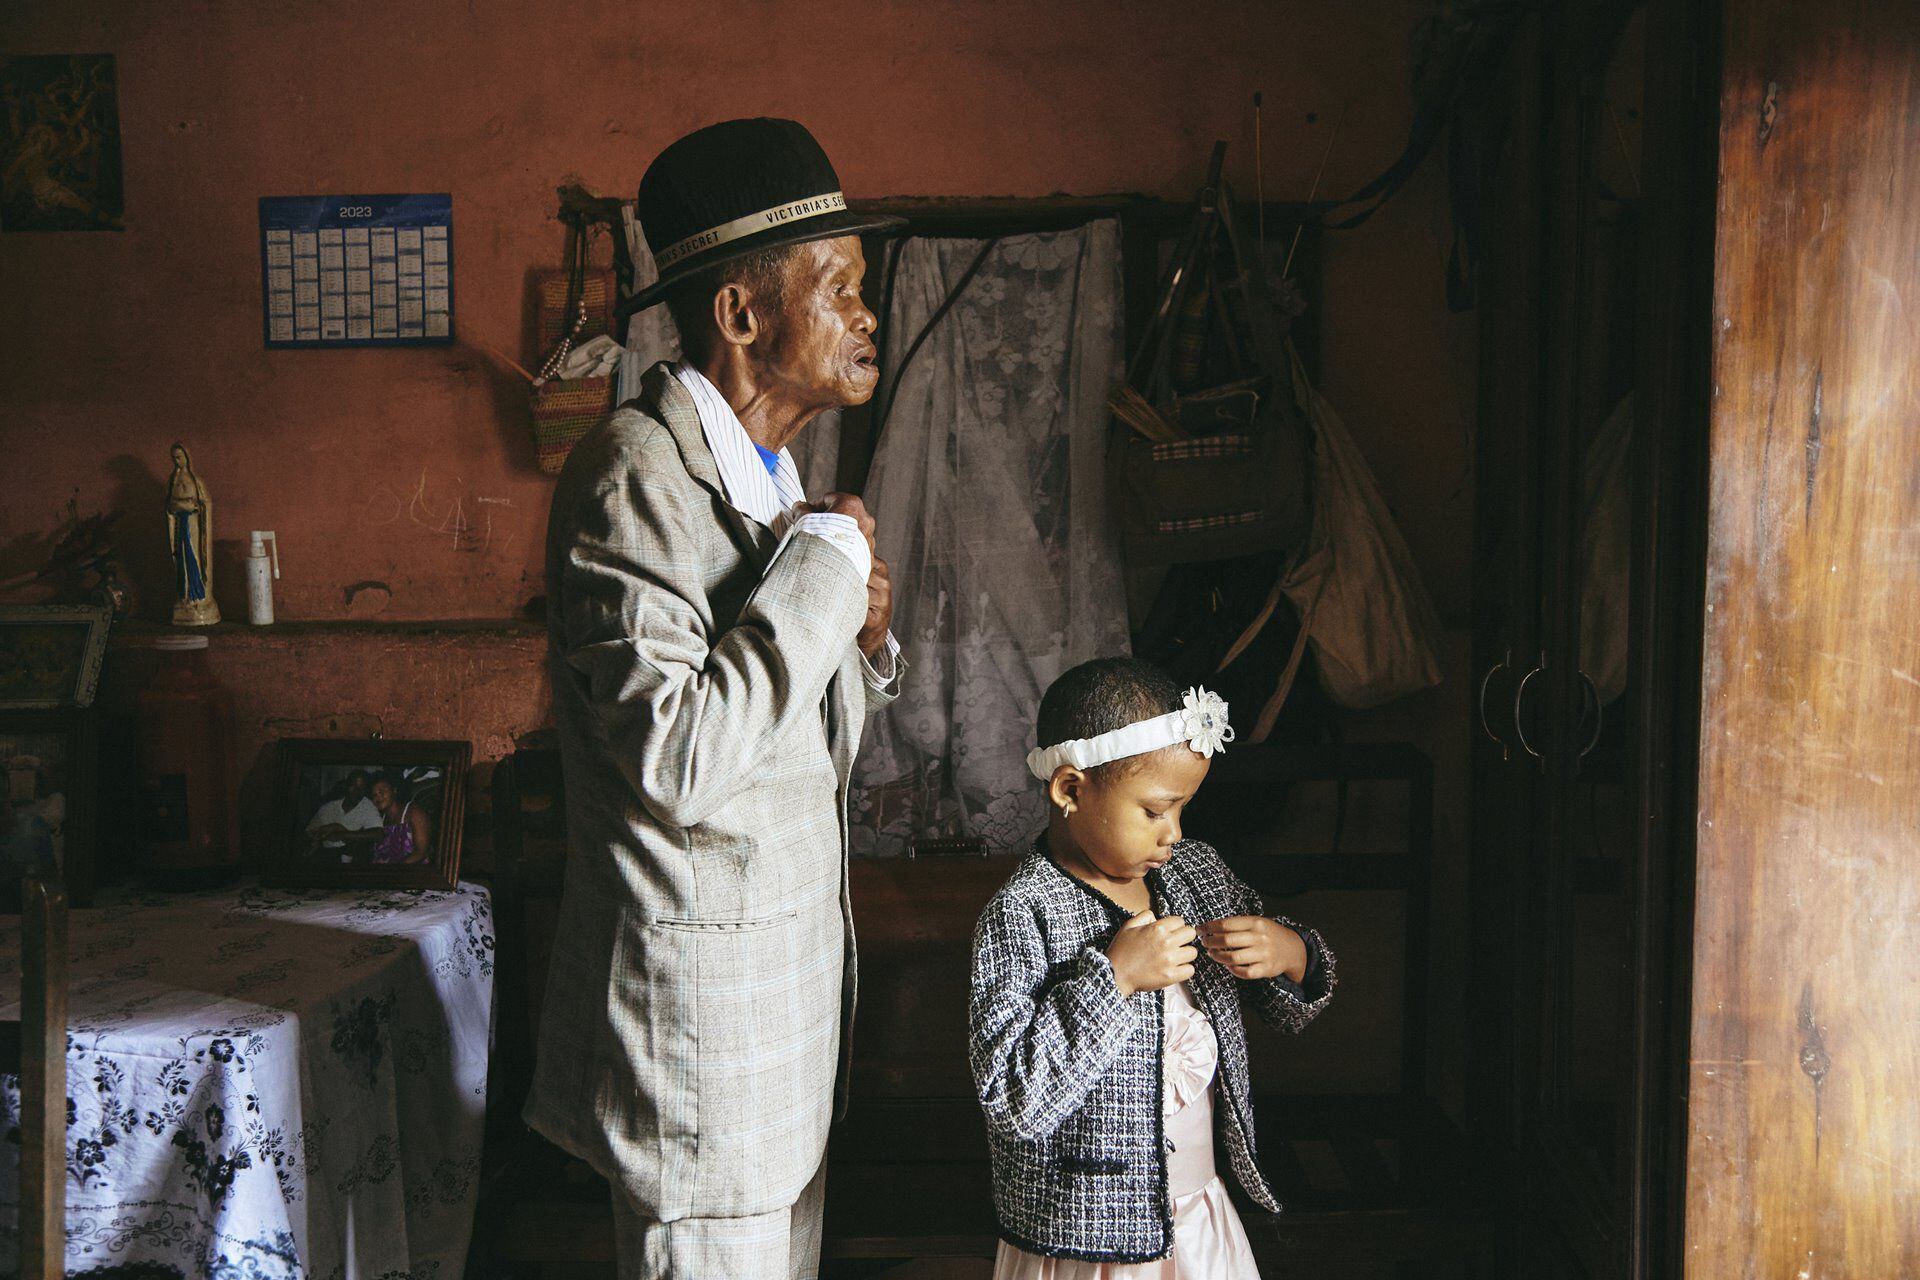 La fotógrafa de GEO, Lee-Ann Olwage, de Sudáfrica ganó la categoría de historia del año con imágenes que documentan la demencia en Madagascar. Oochel: Lee-Ann Olwage